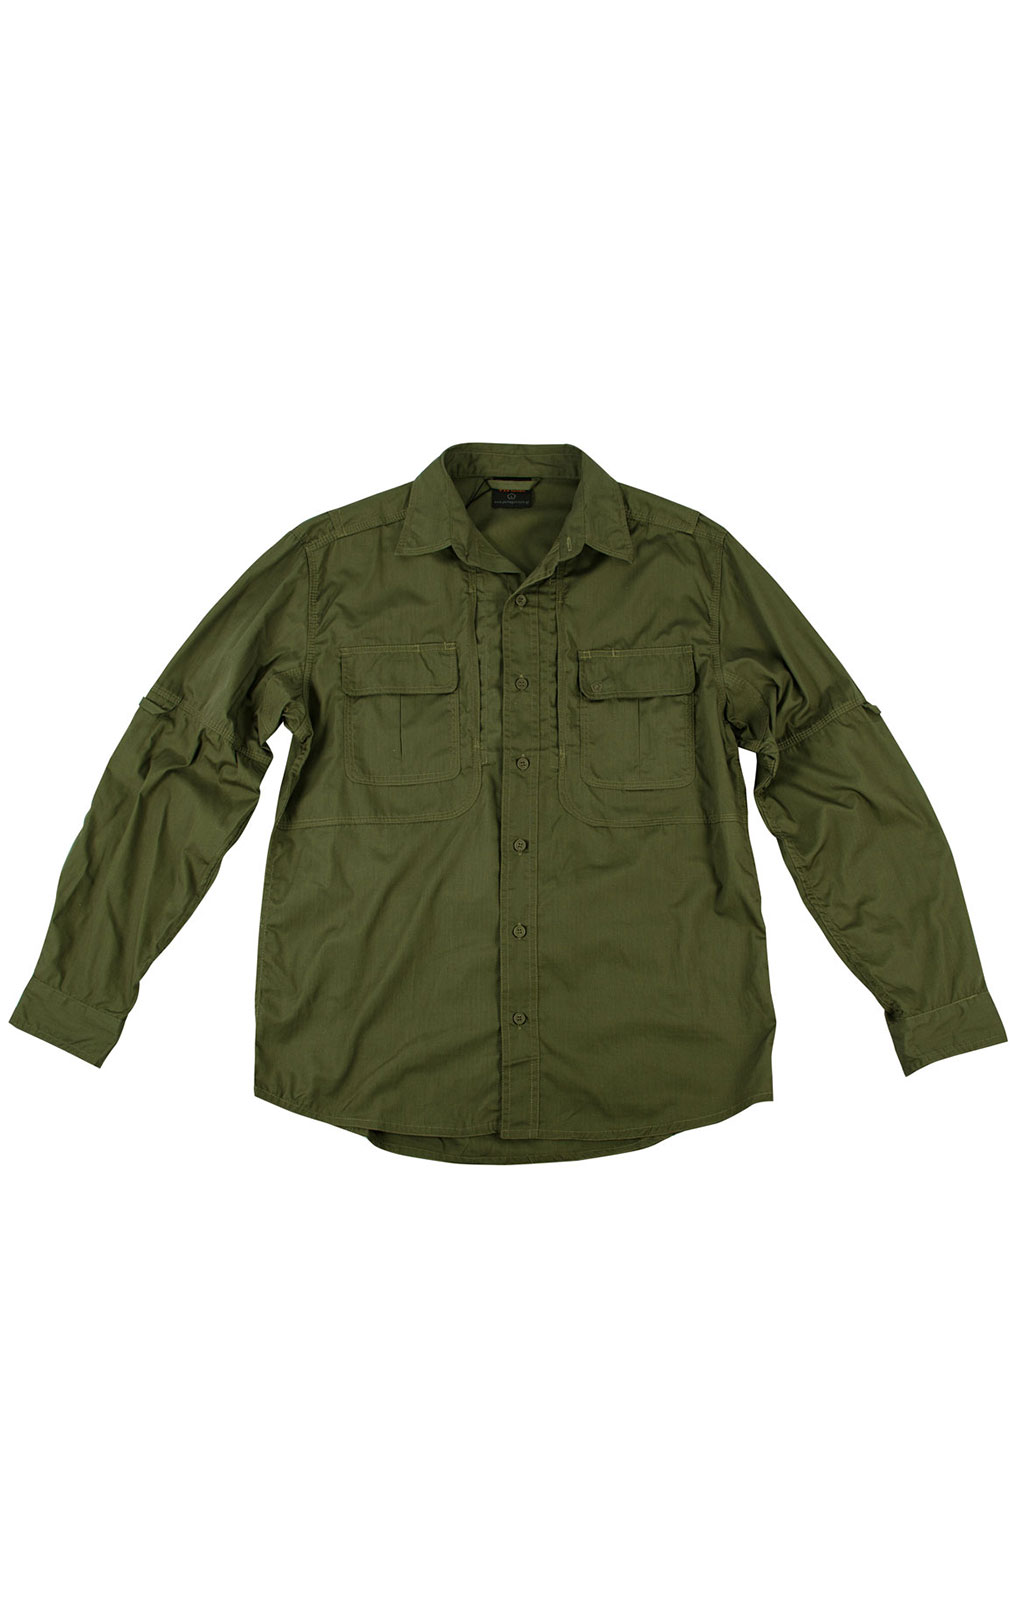 Рубашка Pentagon TACTICAL SHIRT хлопок35%/полиэстр65% olive 02010 